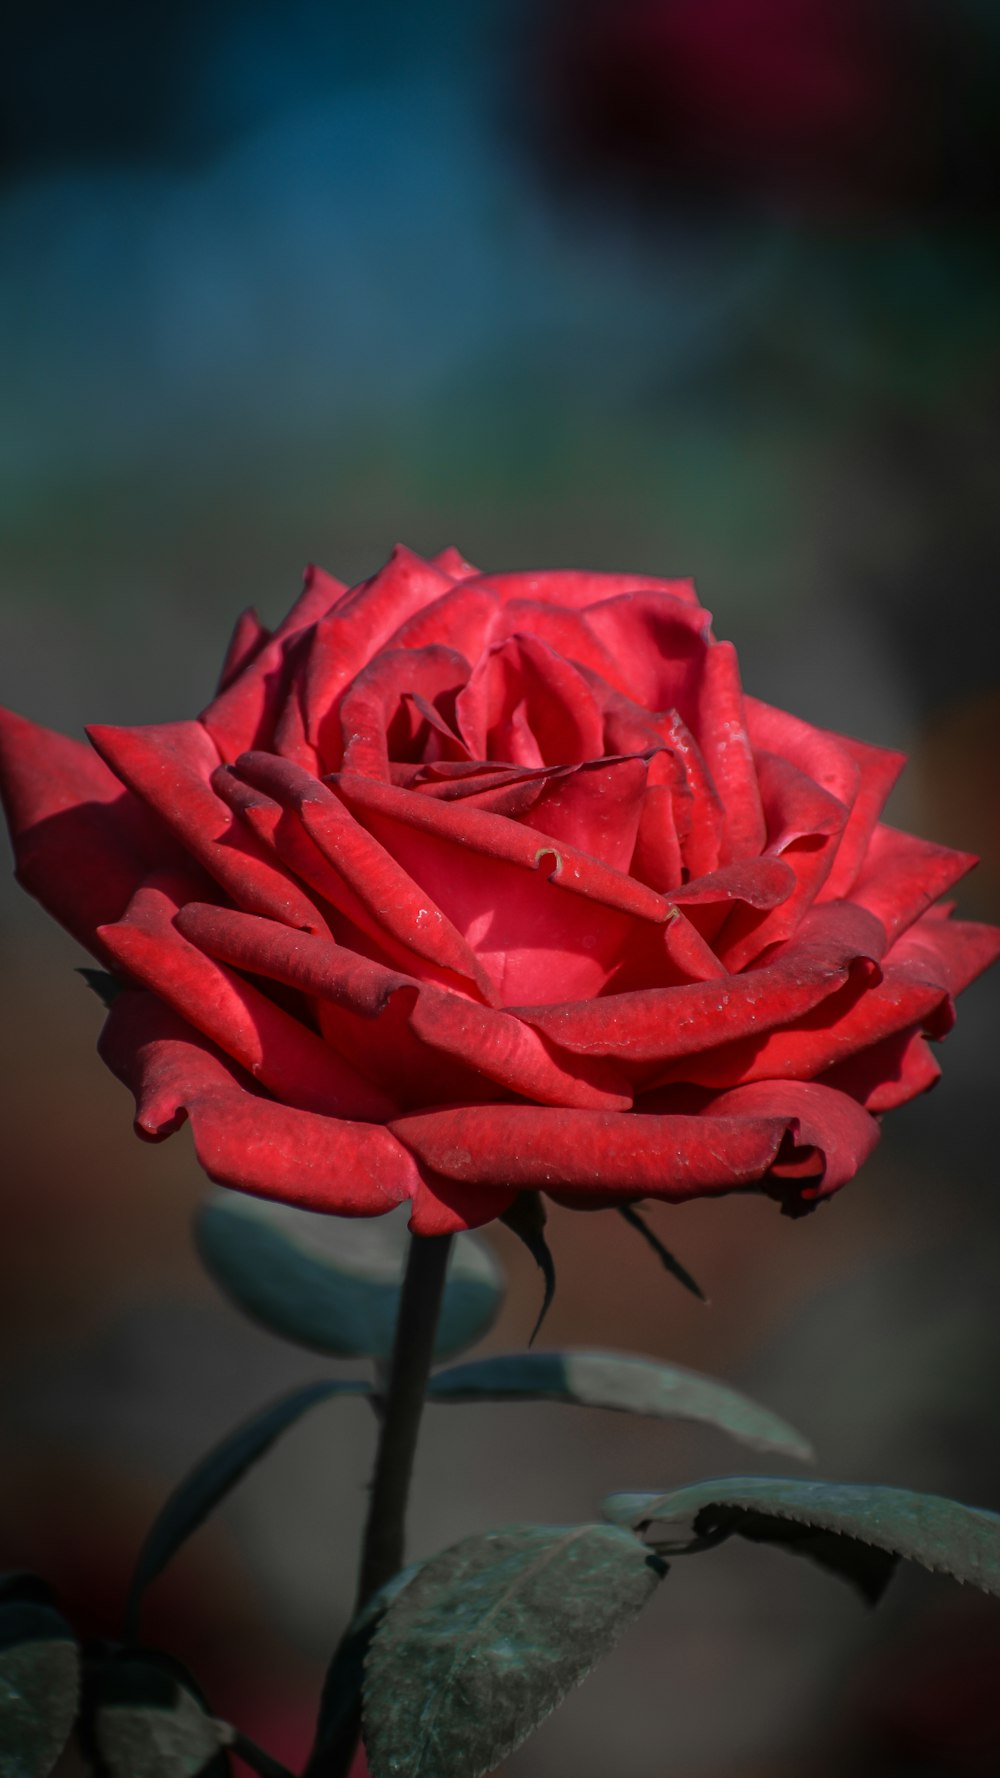 Hoa hồng đỏ là tượng trưng của tình yêu và sự lãng mạn. Hãy bấm vào bức ảnh này để cảm nhận được vẻ đẹp tuyệt vời của những cánh hoa đỏ rực này.